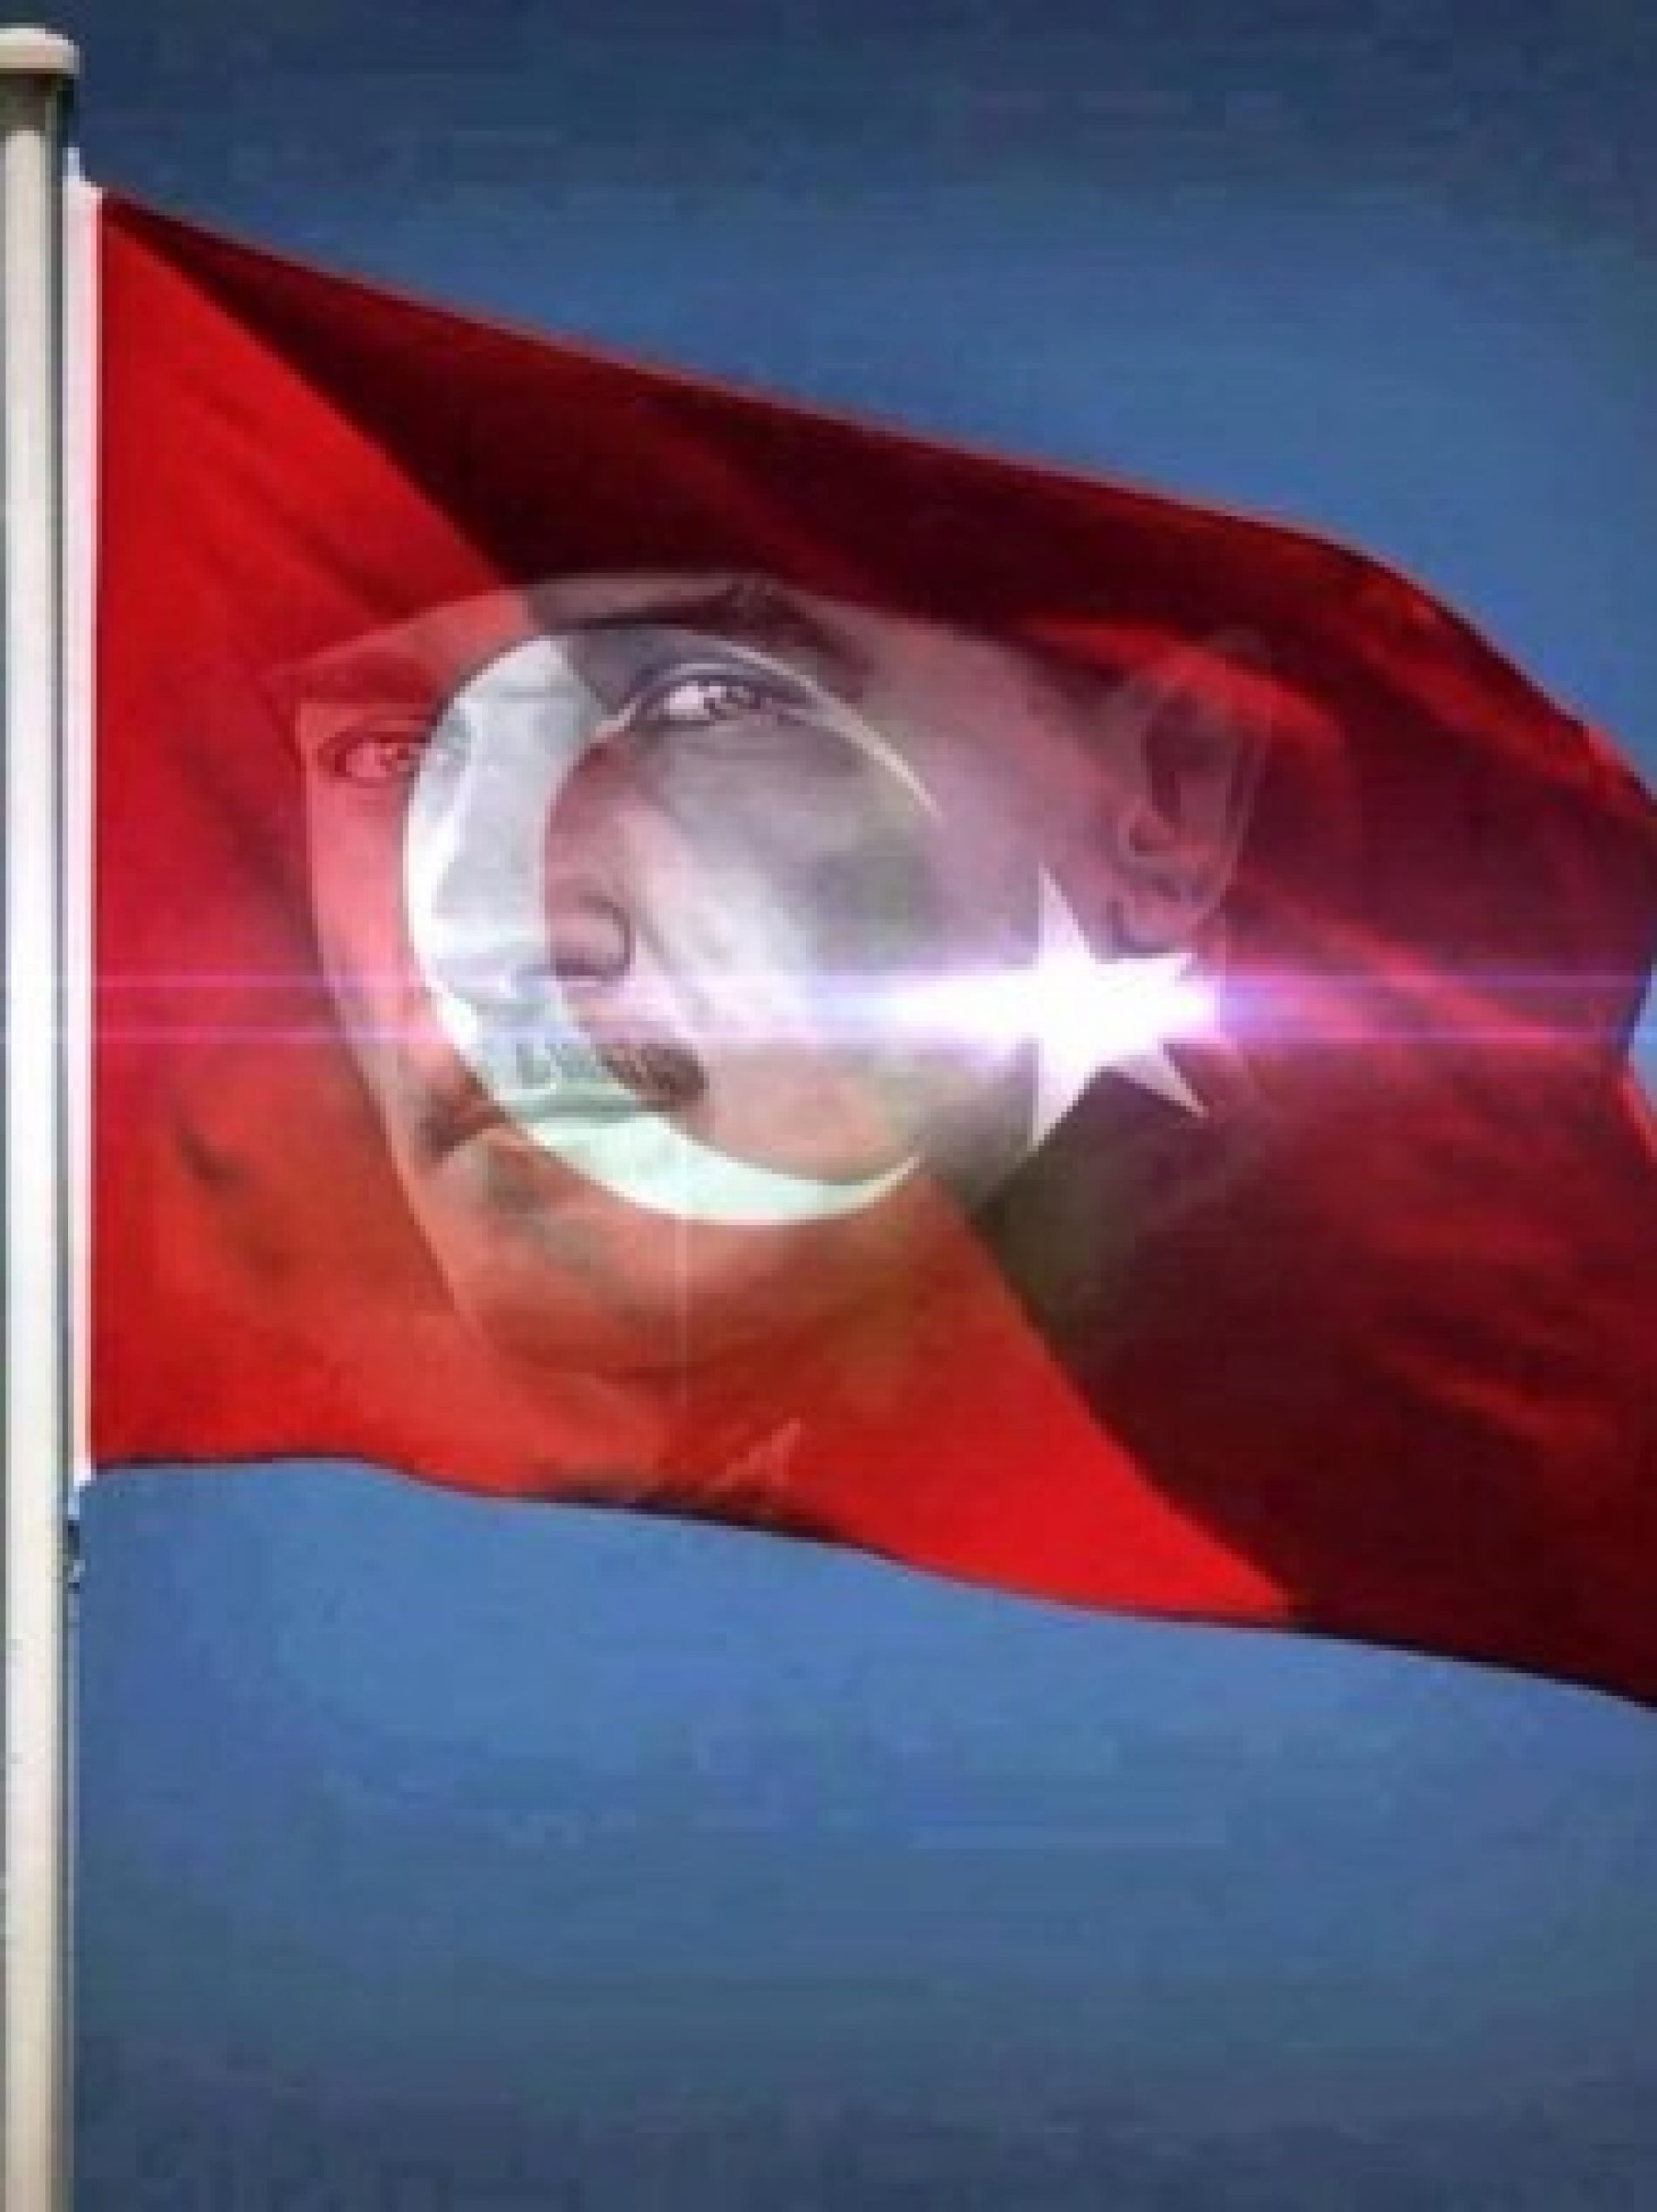 TYSD Genel Merkezi ve 132 Şubemiz Gazi Mustafa Kemal Atatürk’e Türkiye Büyük Millet Meclisi Tarafından “Türk Orduları Başkomutanı” Ünvanı Verilişinin 100. Yılını Kutluyor